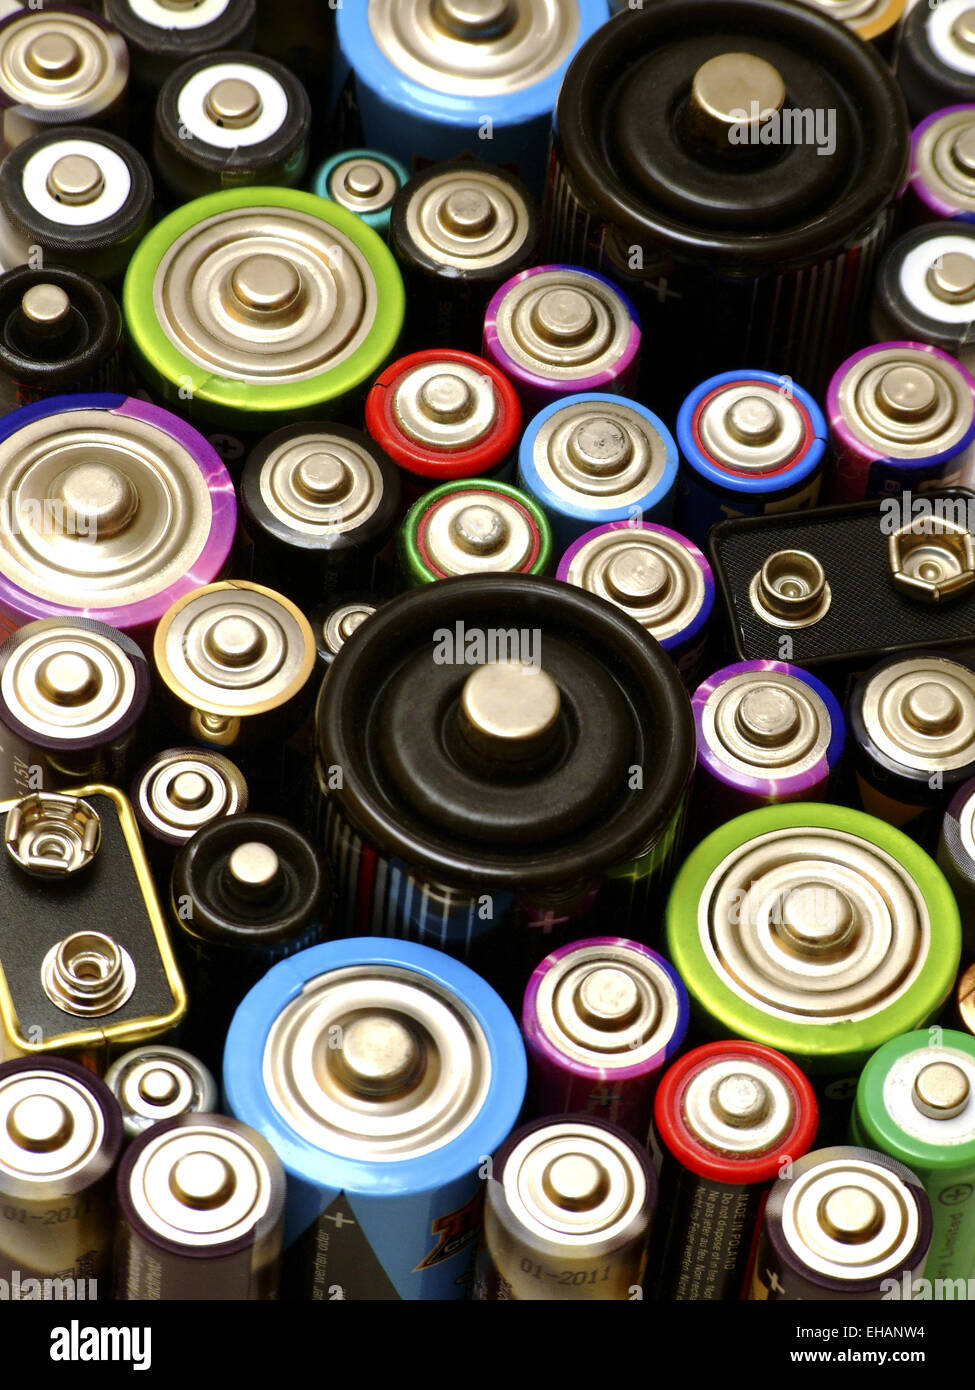 Batterien / batteries Banque D'Images